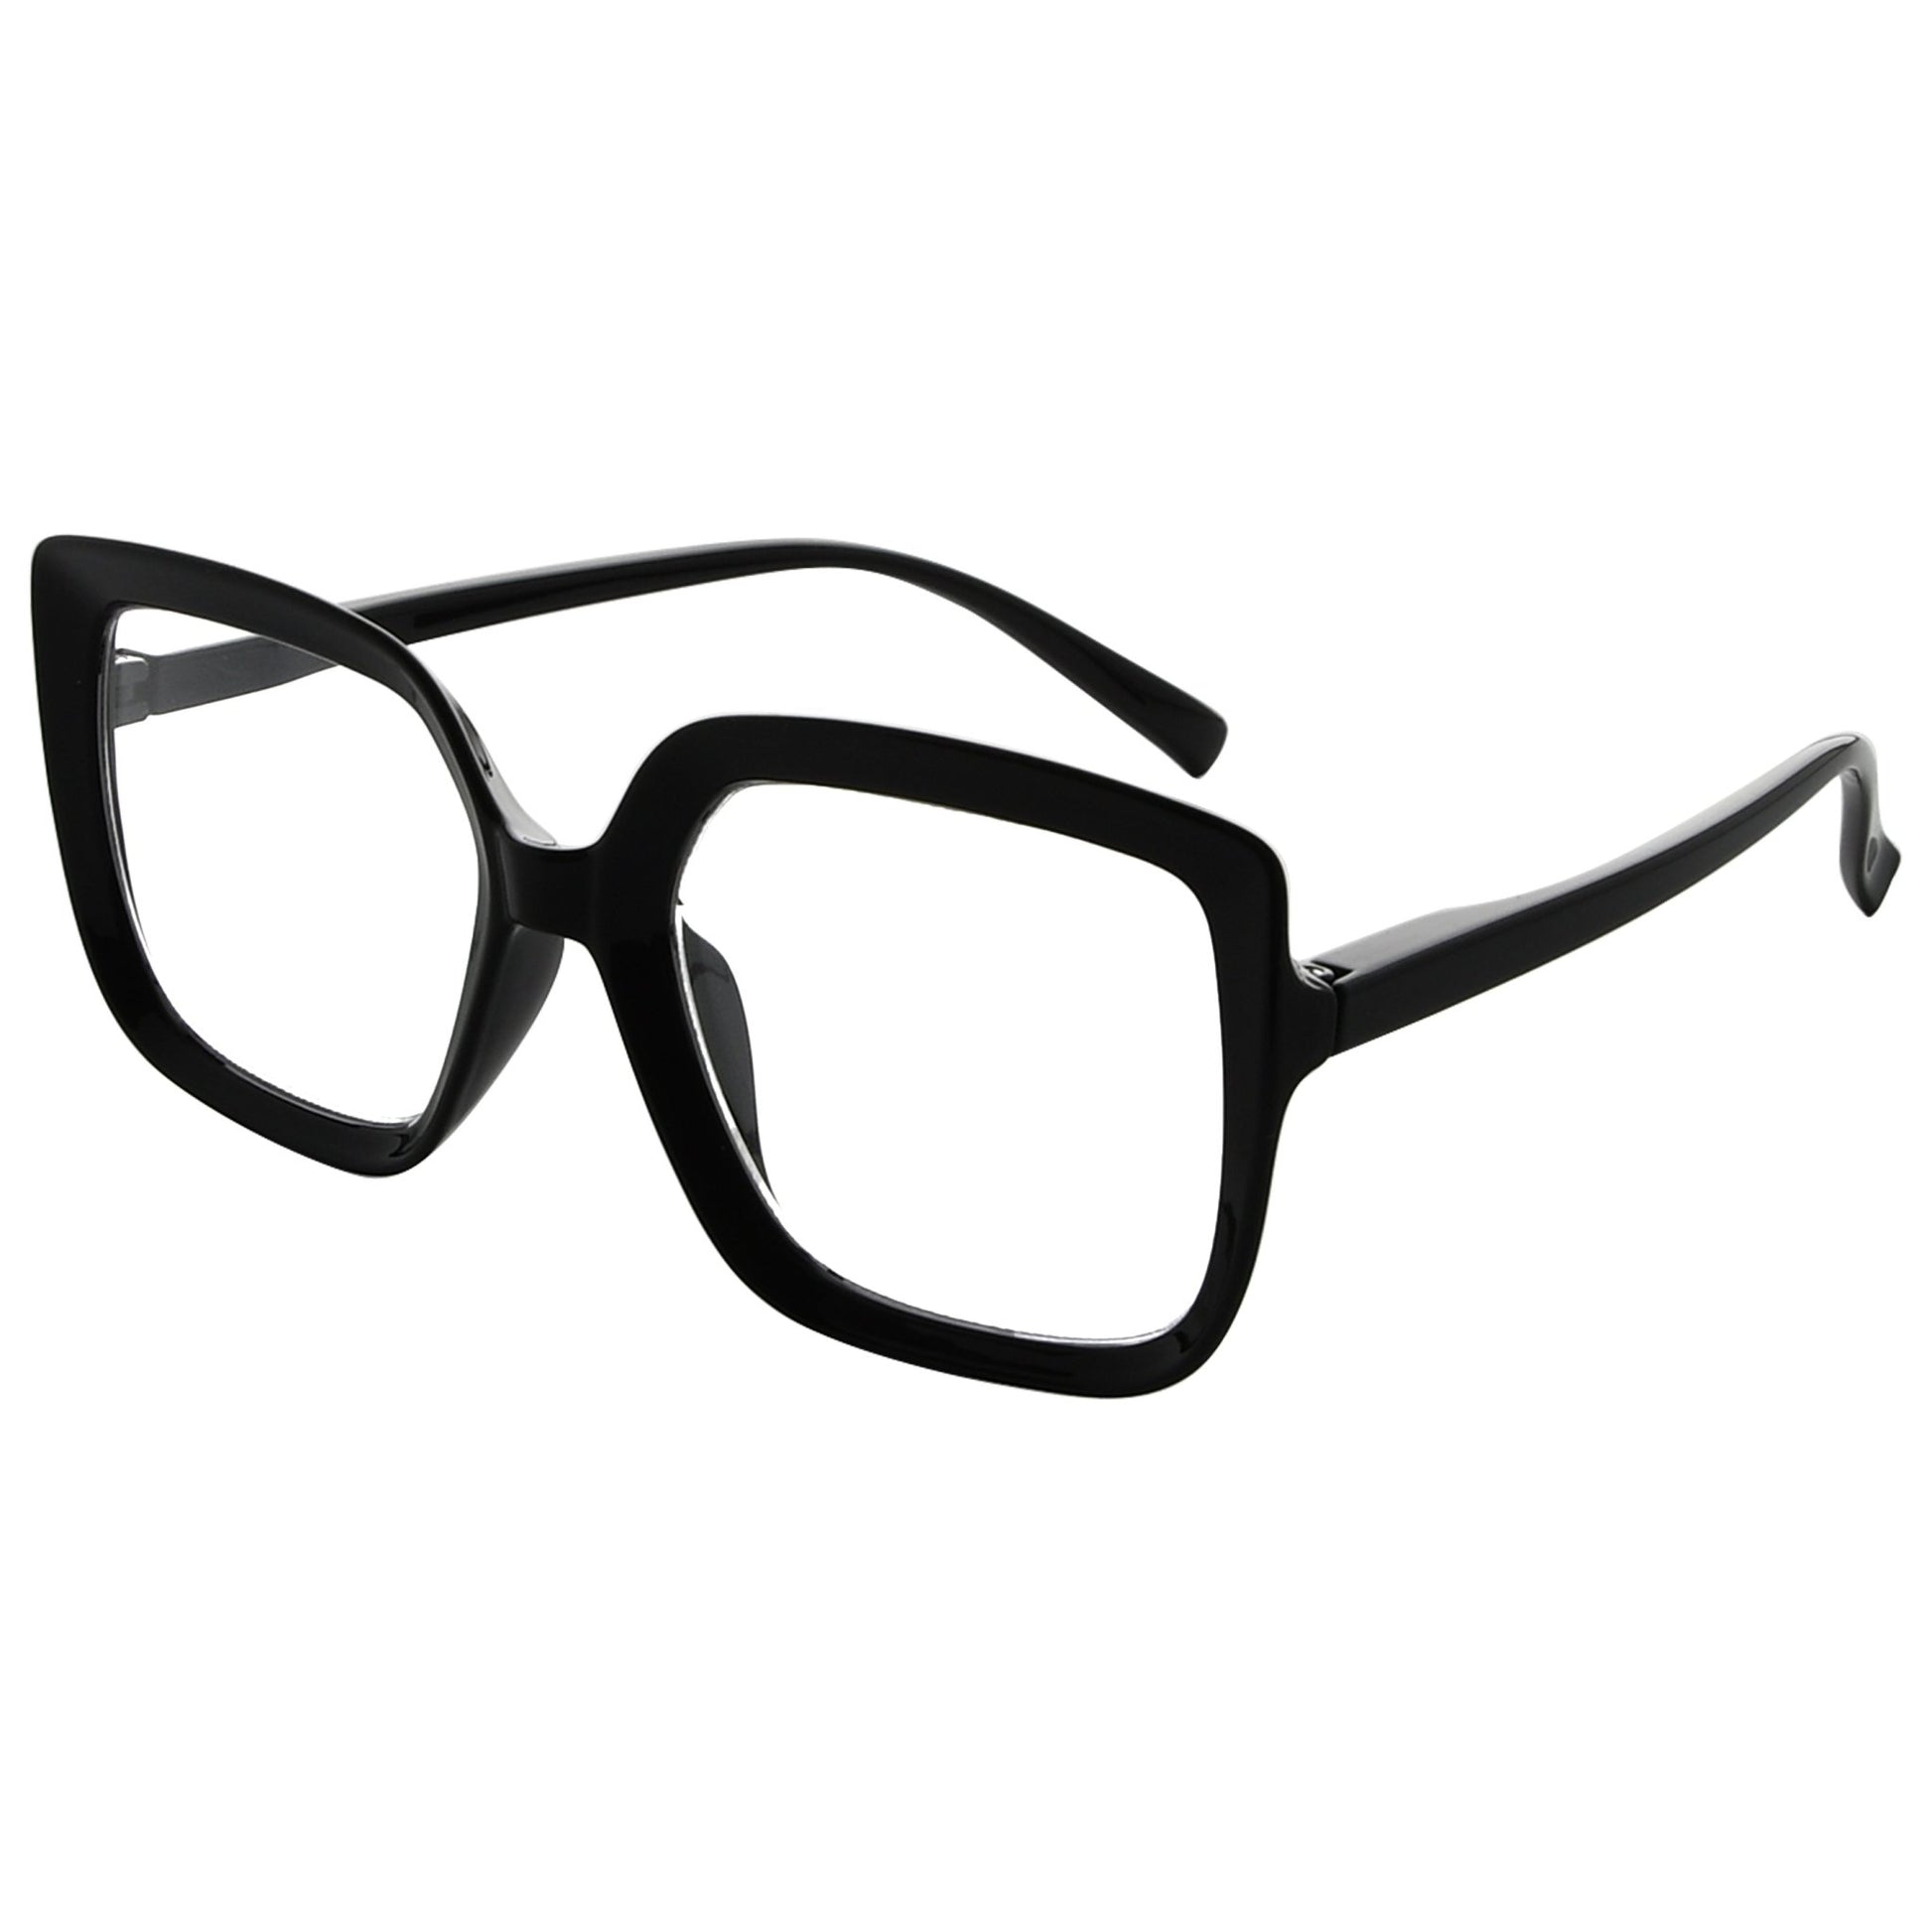 Big Glasses - Stylish Oversized Eyeglasses